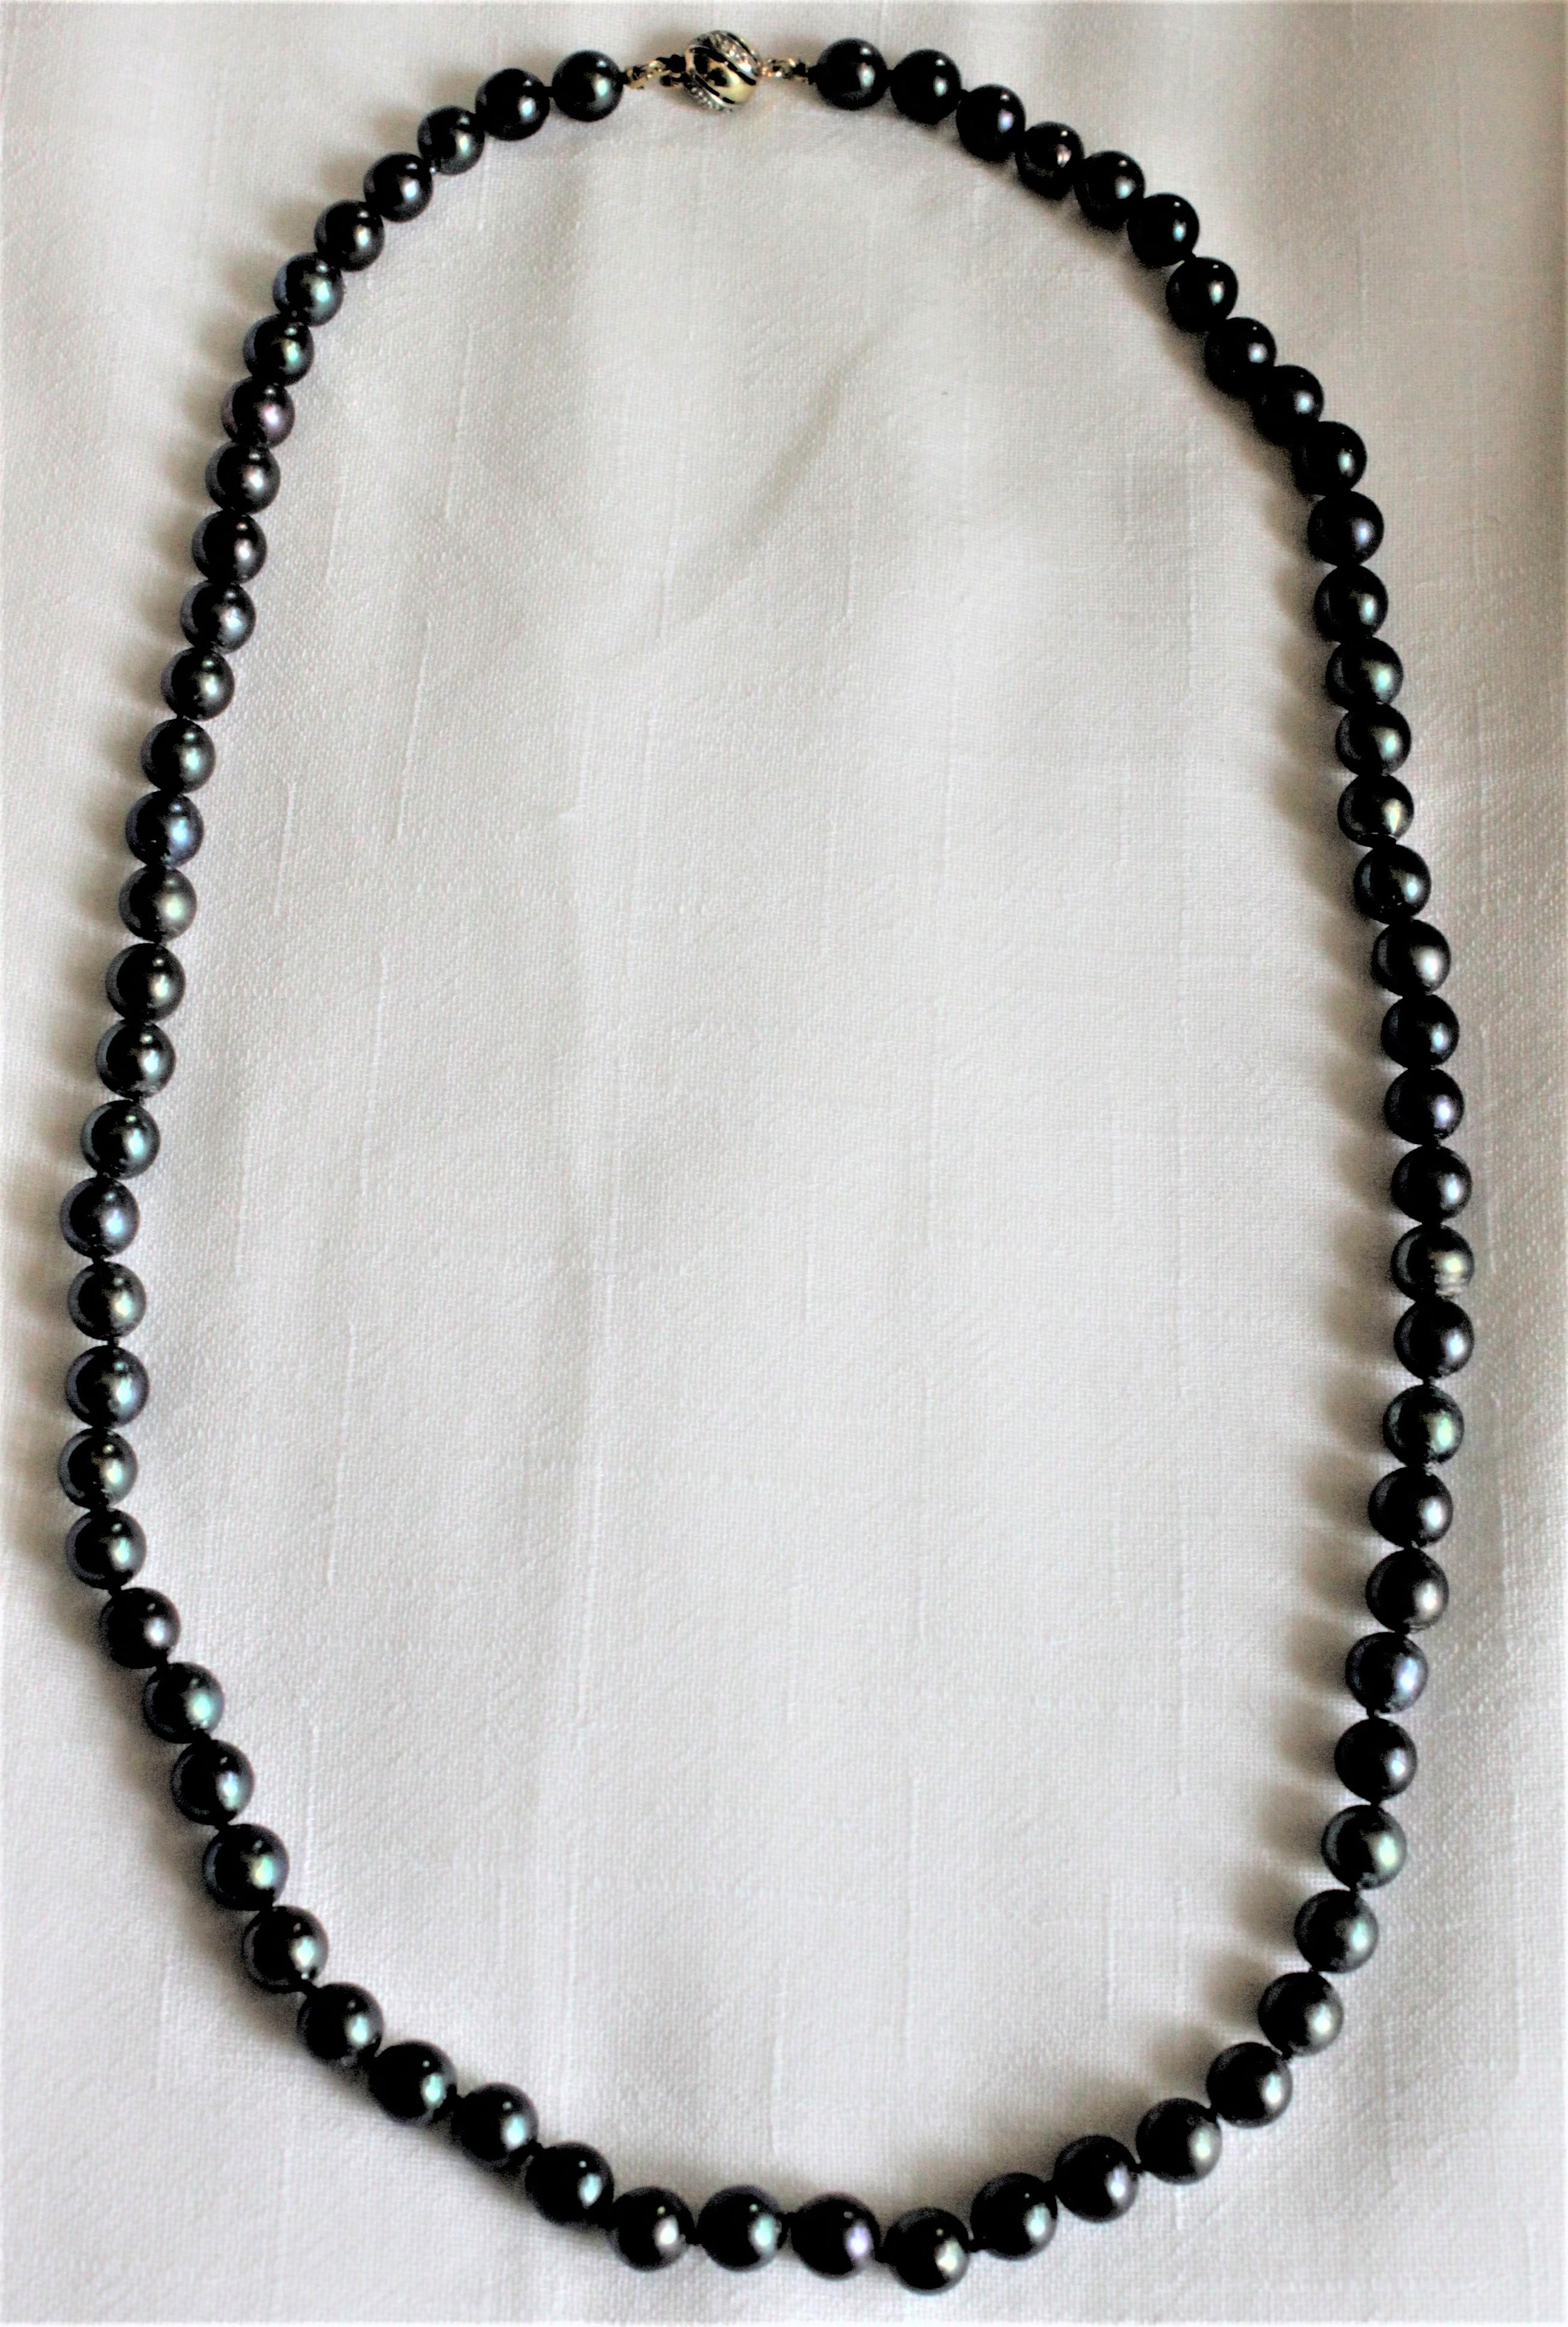 Diese Vintage-Damen-Halskette aus schwarzen Tahiti-Perlen ist nicht mit einem bestimmten Hersteller gekennzeichnet, trägt aber europäische Goldmarken und stammt vermutlich aus Italien. Die Perlen sind vermutlich Zuchtperlen, aber sie sind im